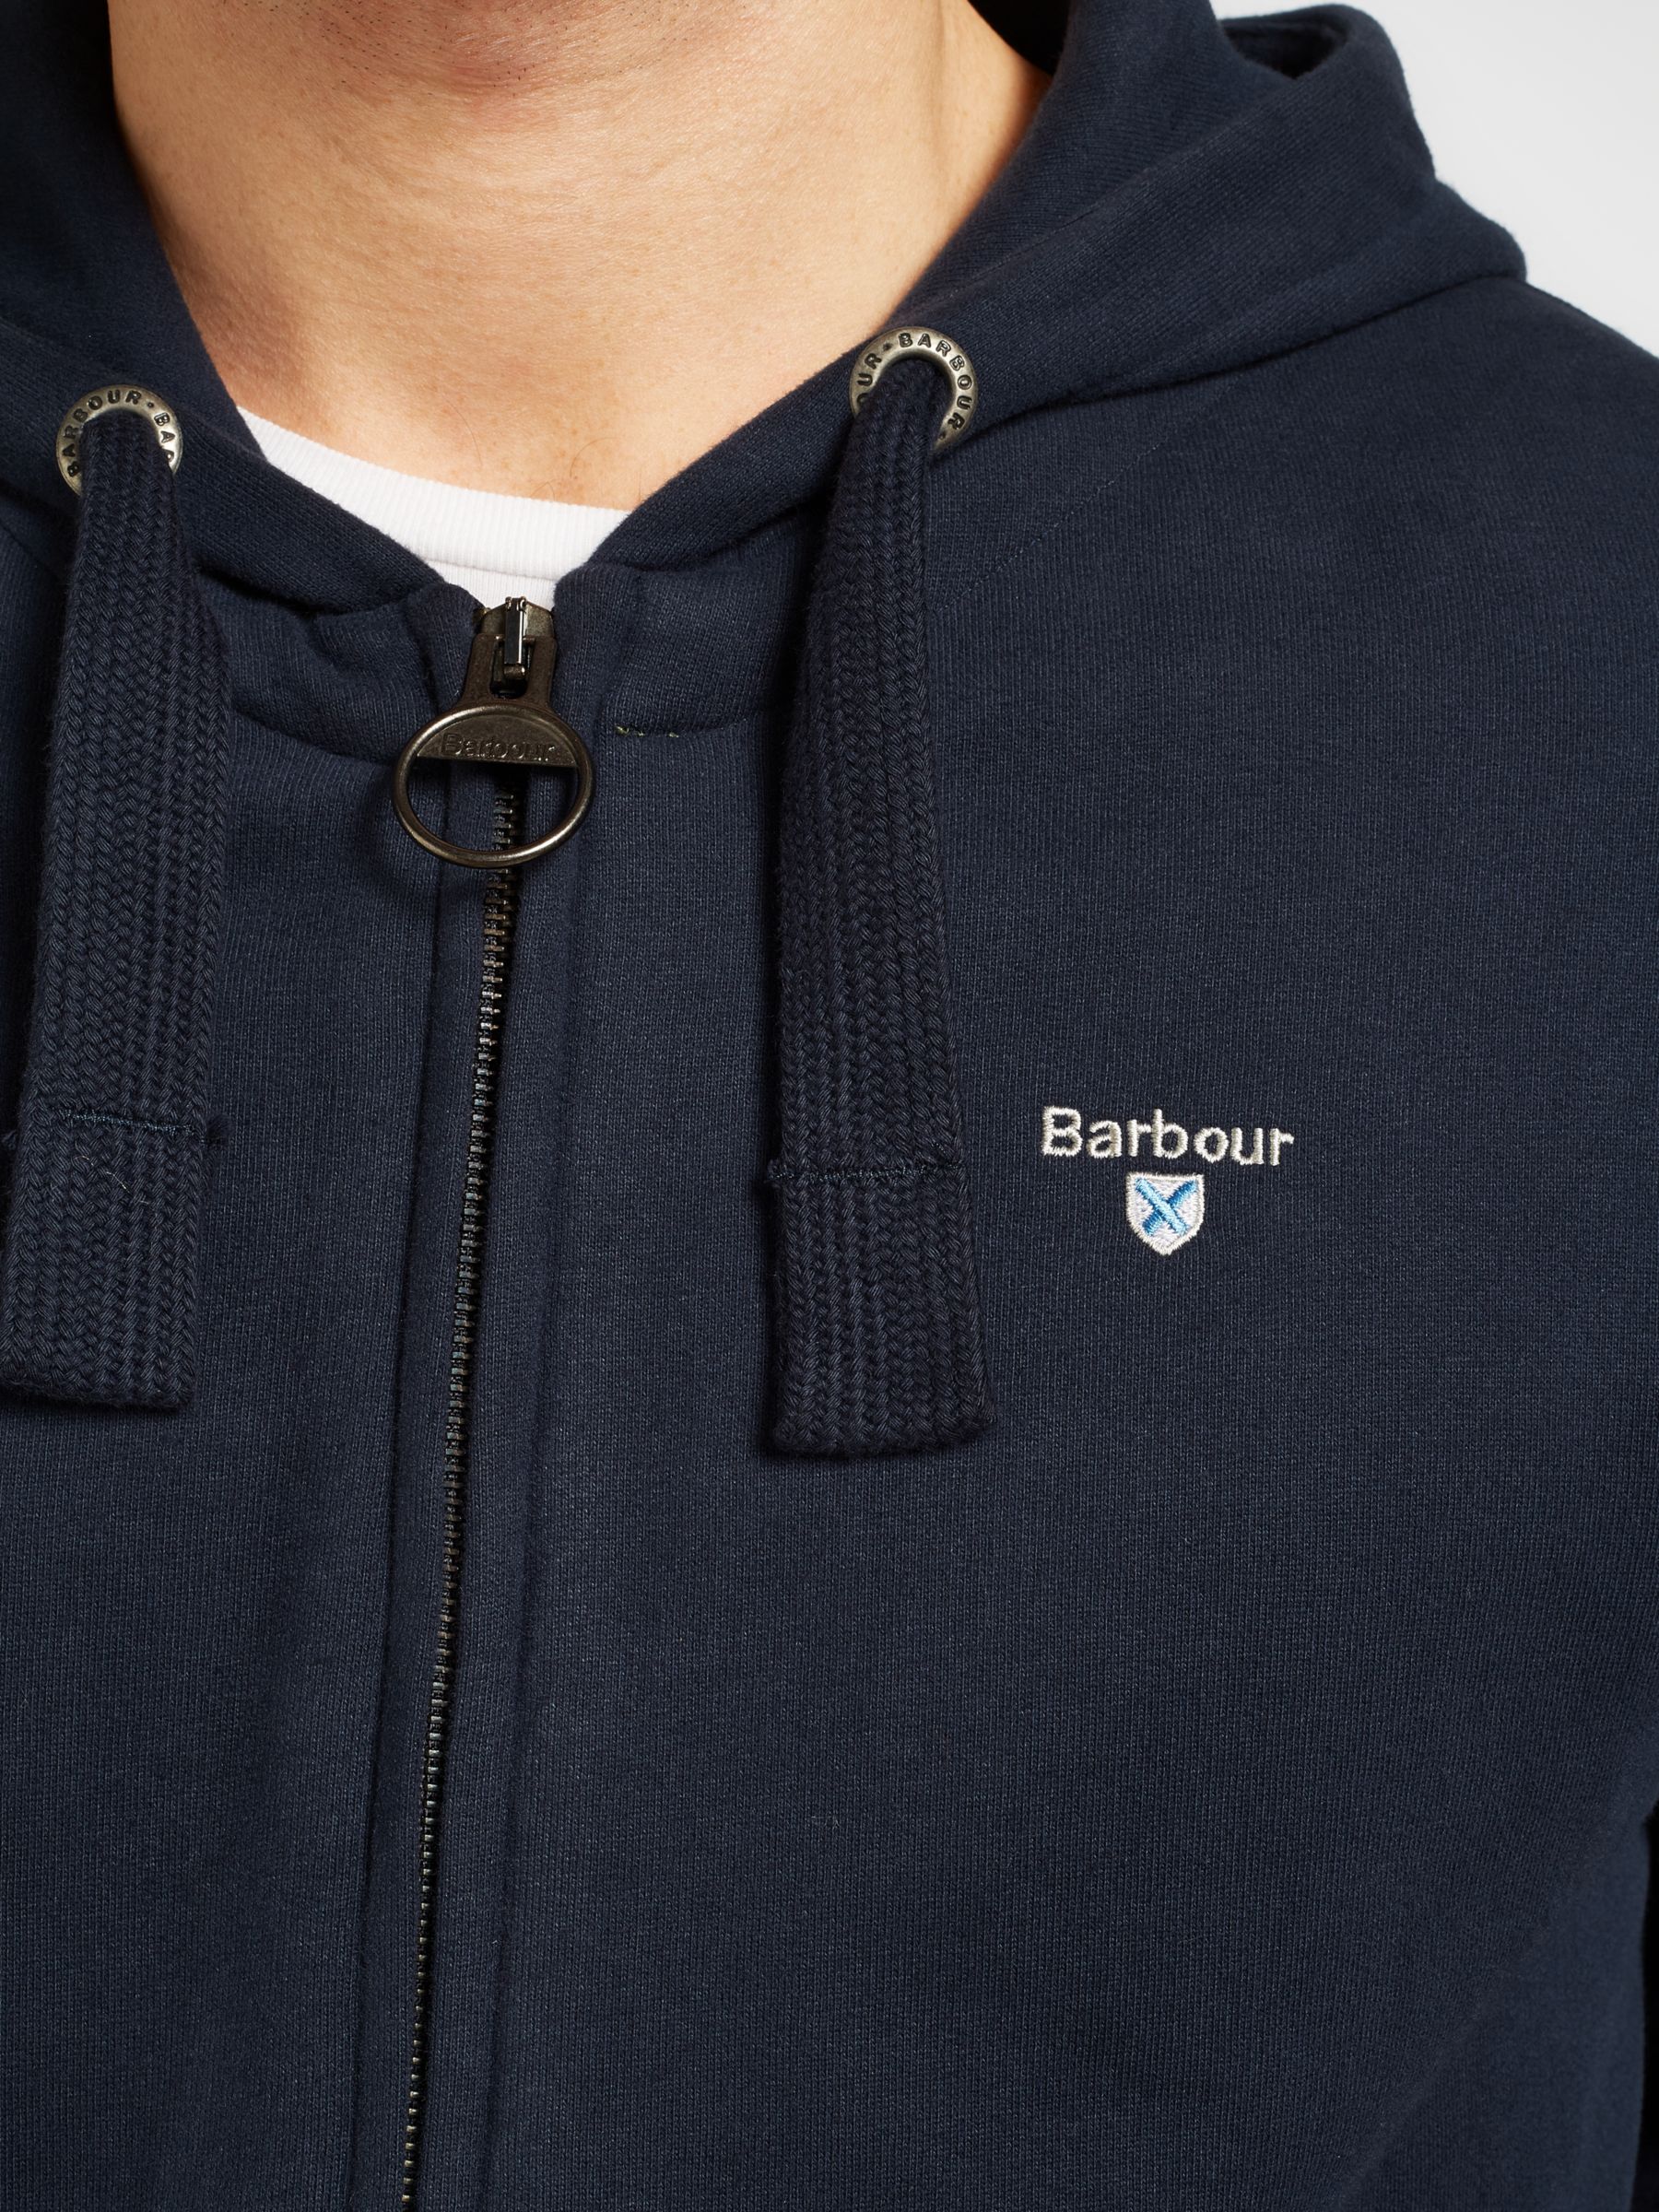 barbour hoodies